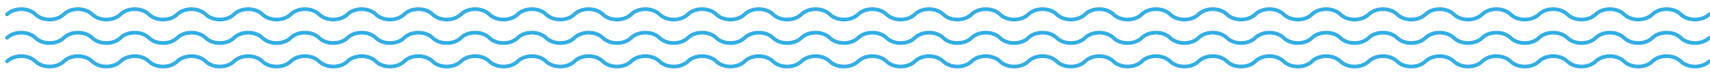 Illustration of blue waves